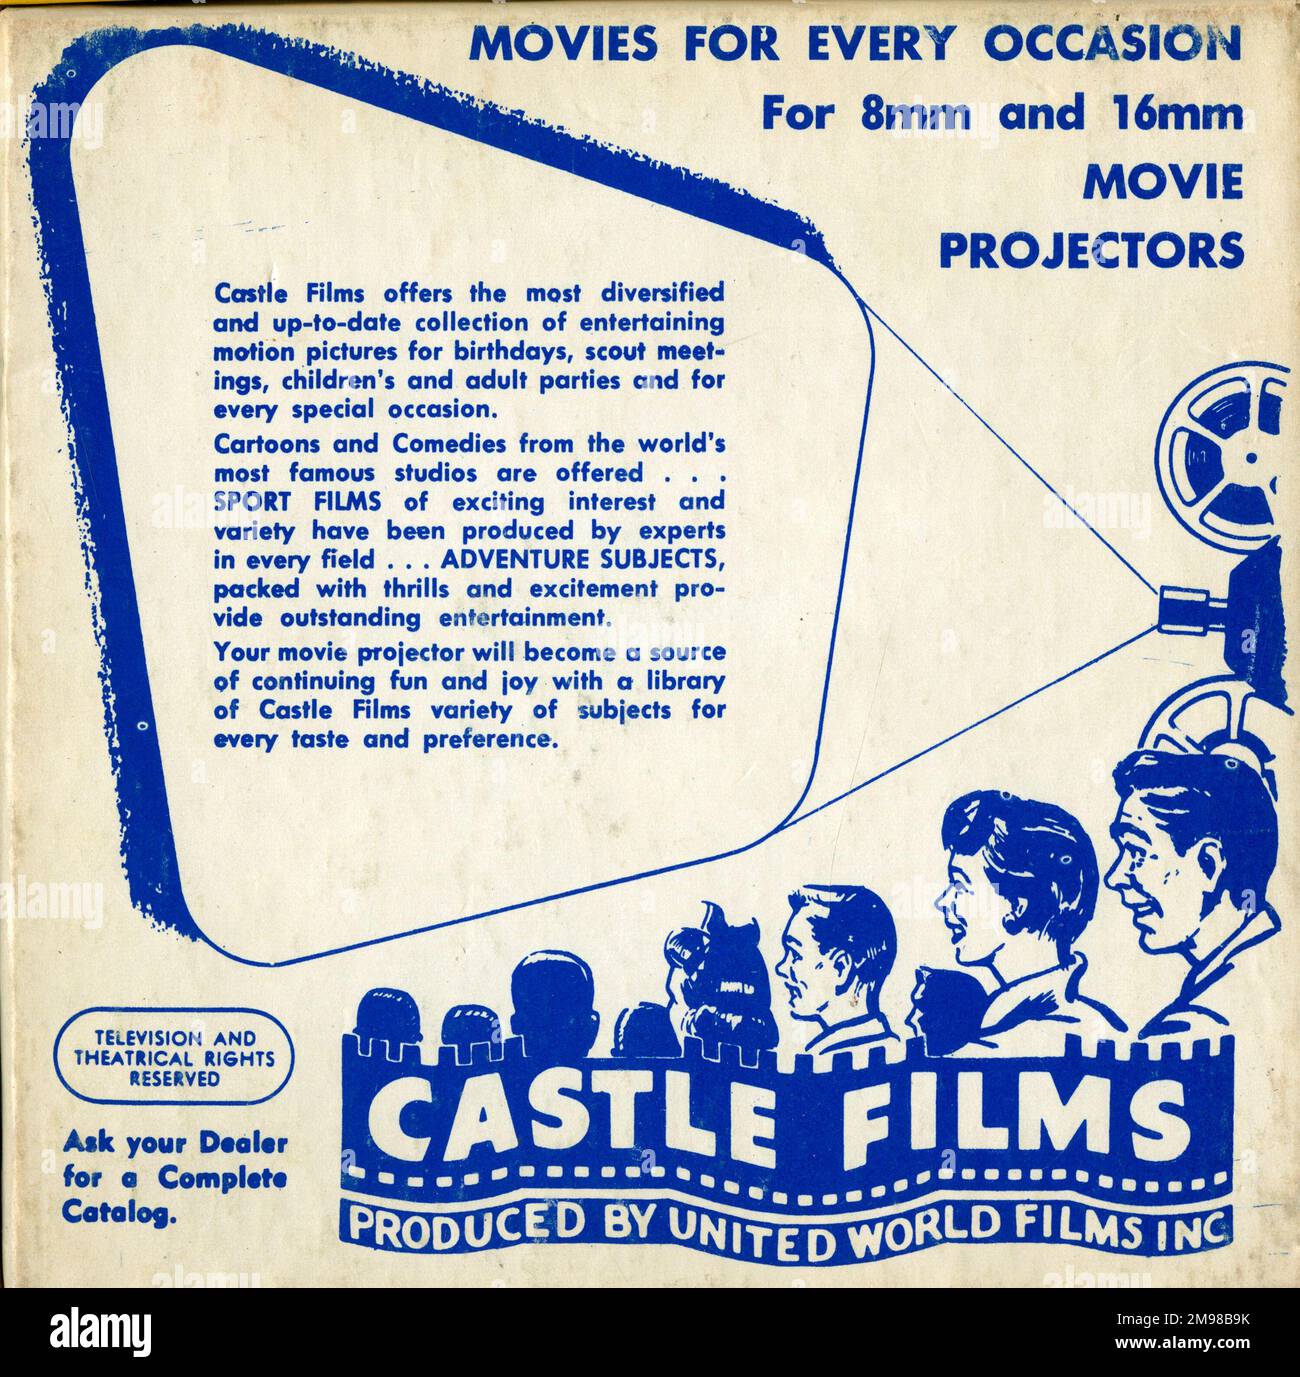 Publicité pour Castle films, produit par United World films Inc -- films pour chaque occasion, pour 8mm et 16mm projecteurs de film. Castle films (plus tard Universal 8) était un distributeur de films à domicile basé en Californie. Banque D'Images